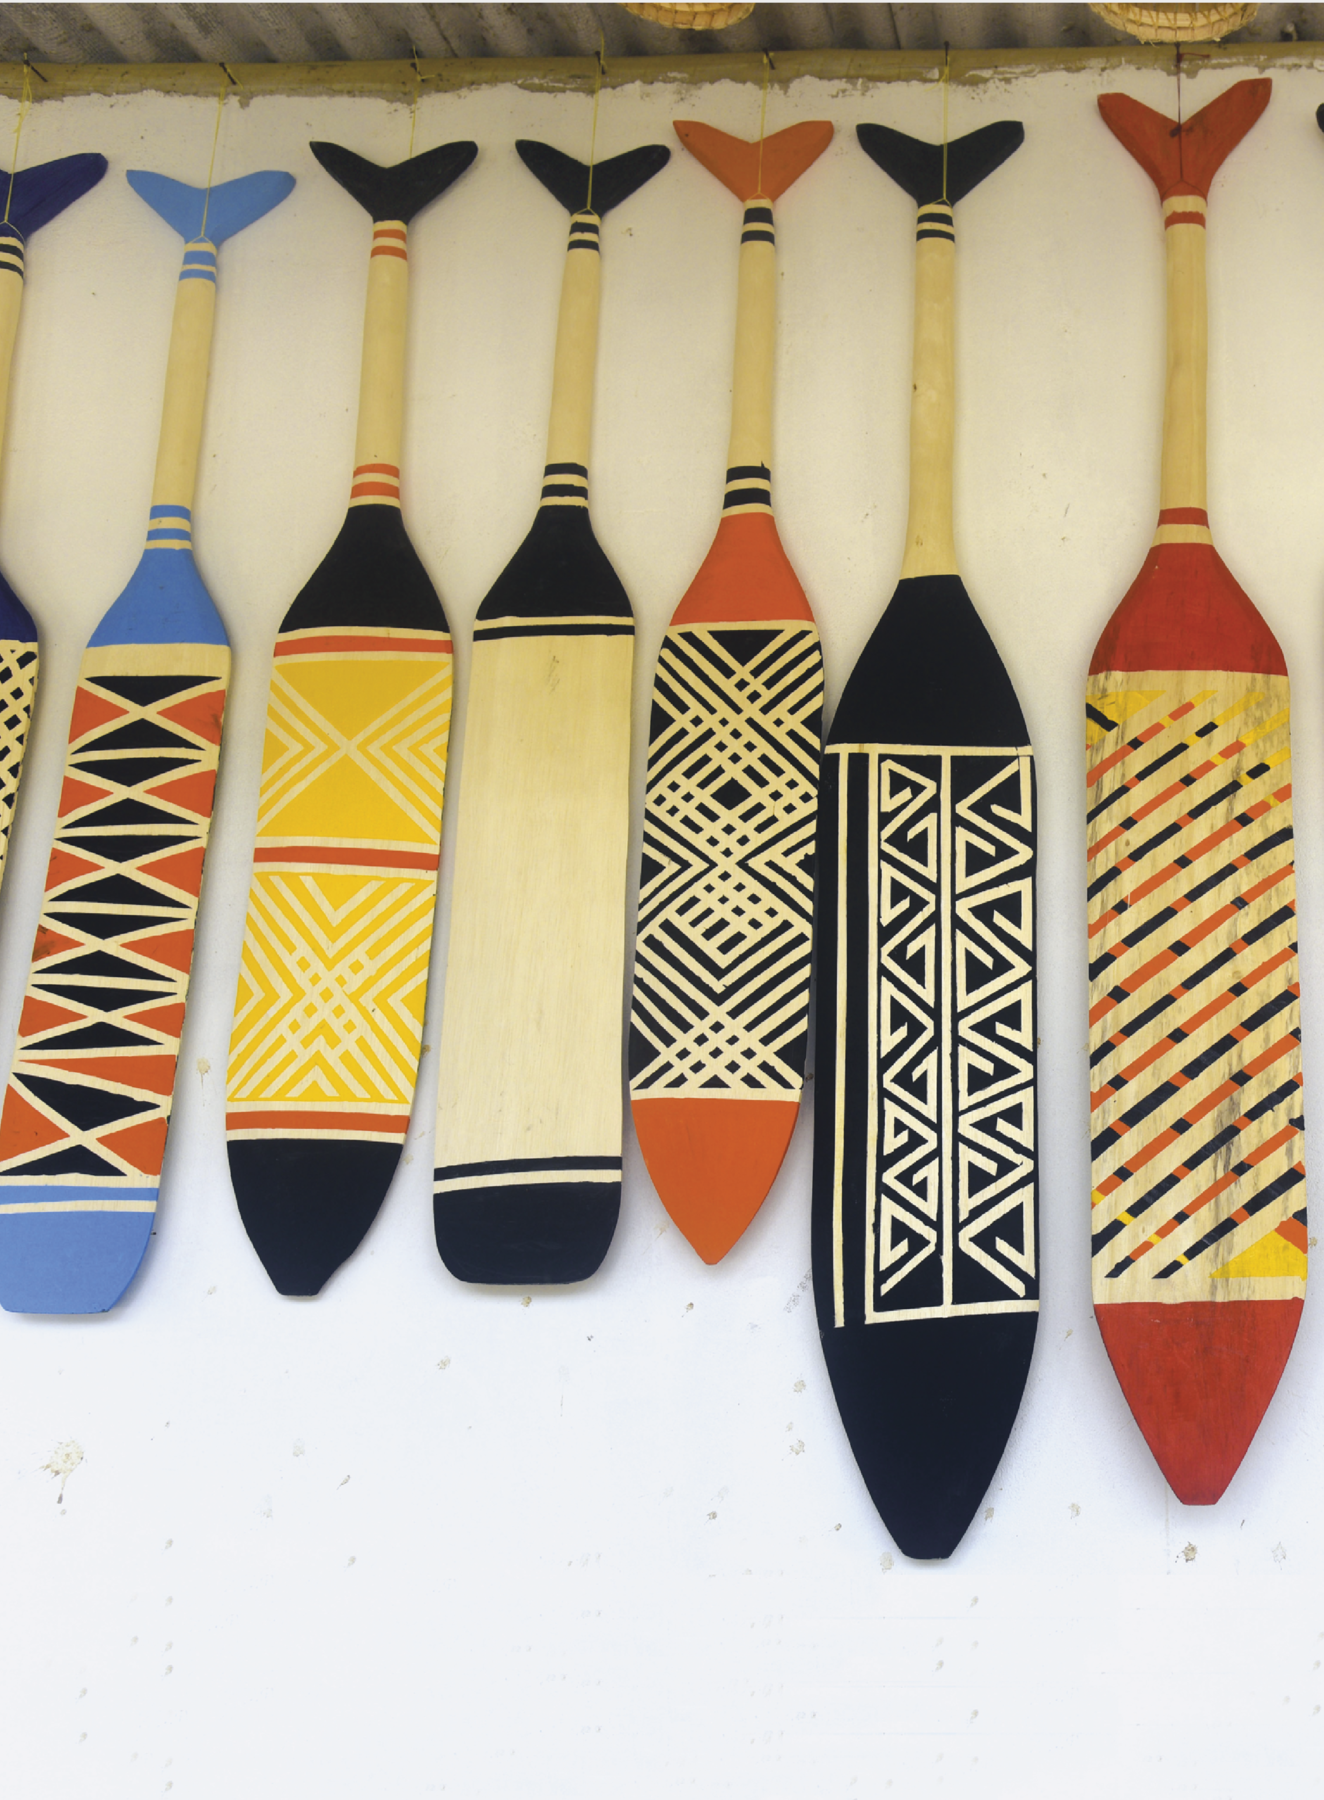 Fotografia. Seis remos de madeira cada um pintado com um tipo de grafismo indígena.